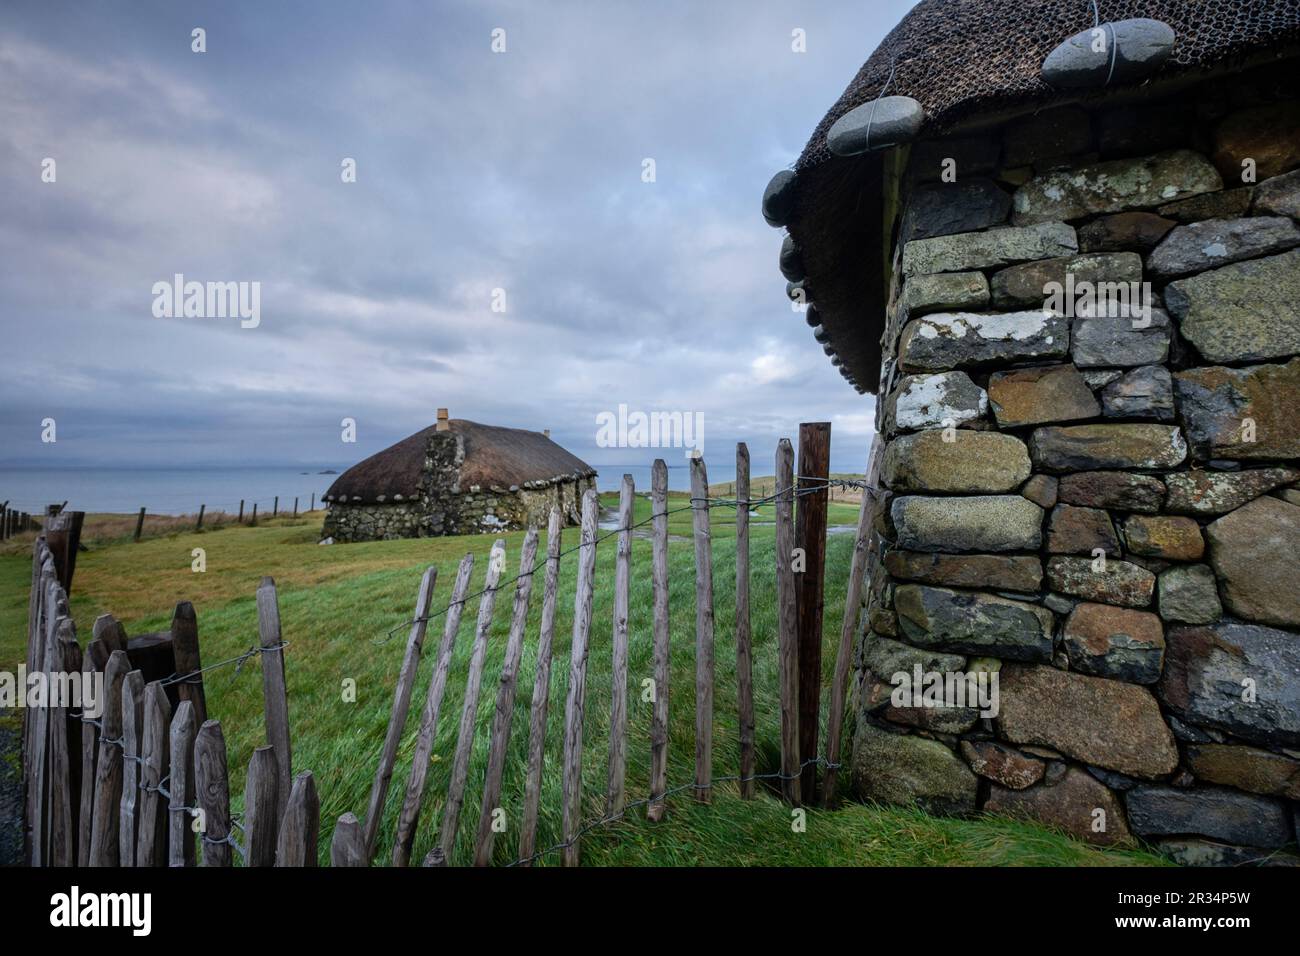 poblado tipico celta,museo de la vida insular, Kilmuir, ( Cille Mhoire ),costa oeste de la península de Trotternish, isla de Skye, Highlands, Escocia, Reino Unido. Stock Photo